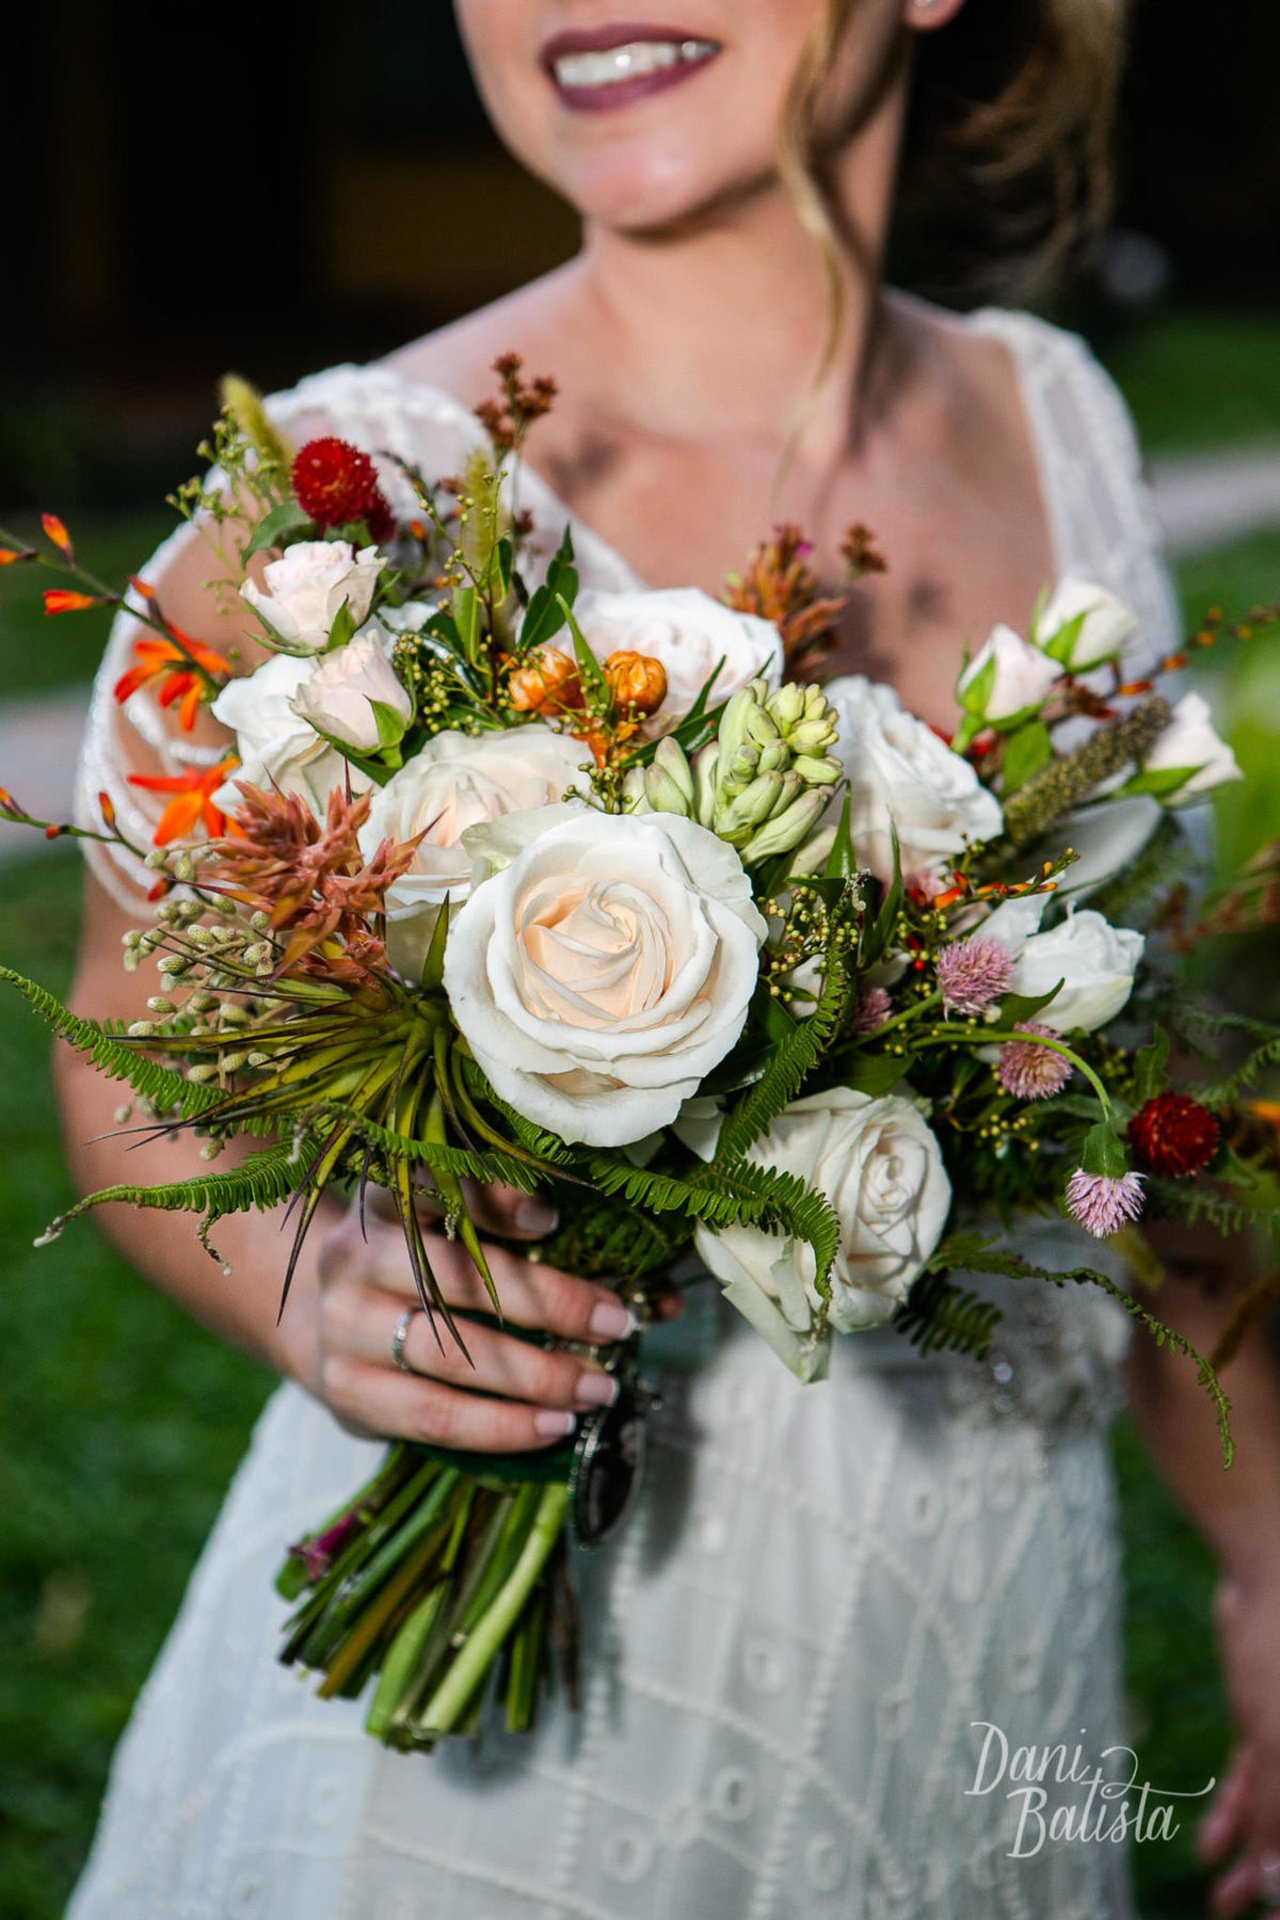 6 dicas para noiva escolher o Bouquet ideal